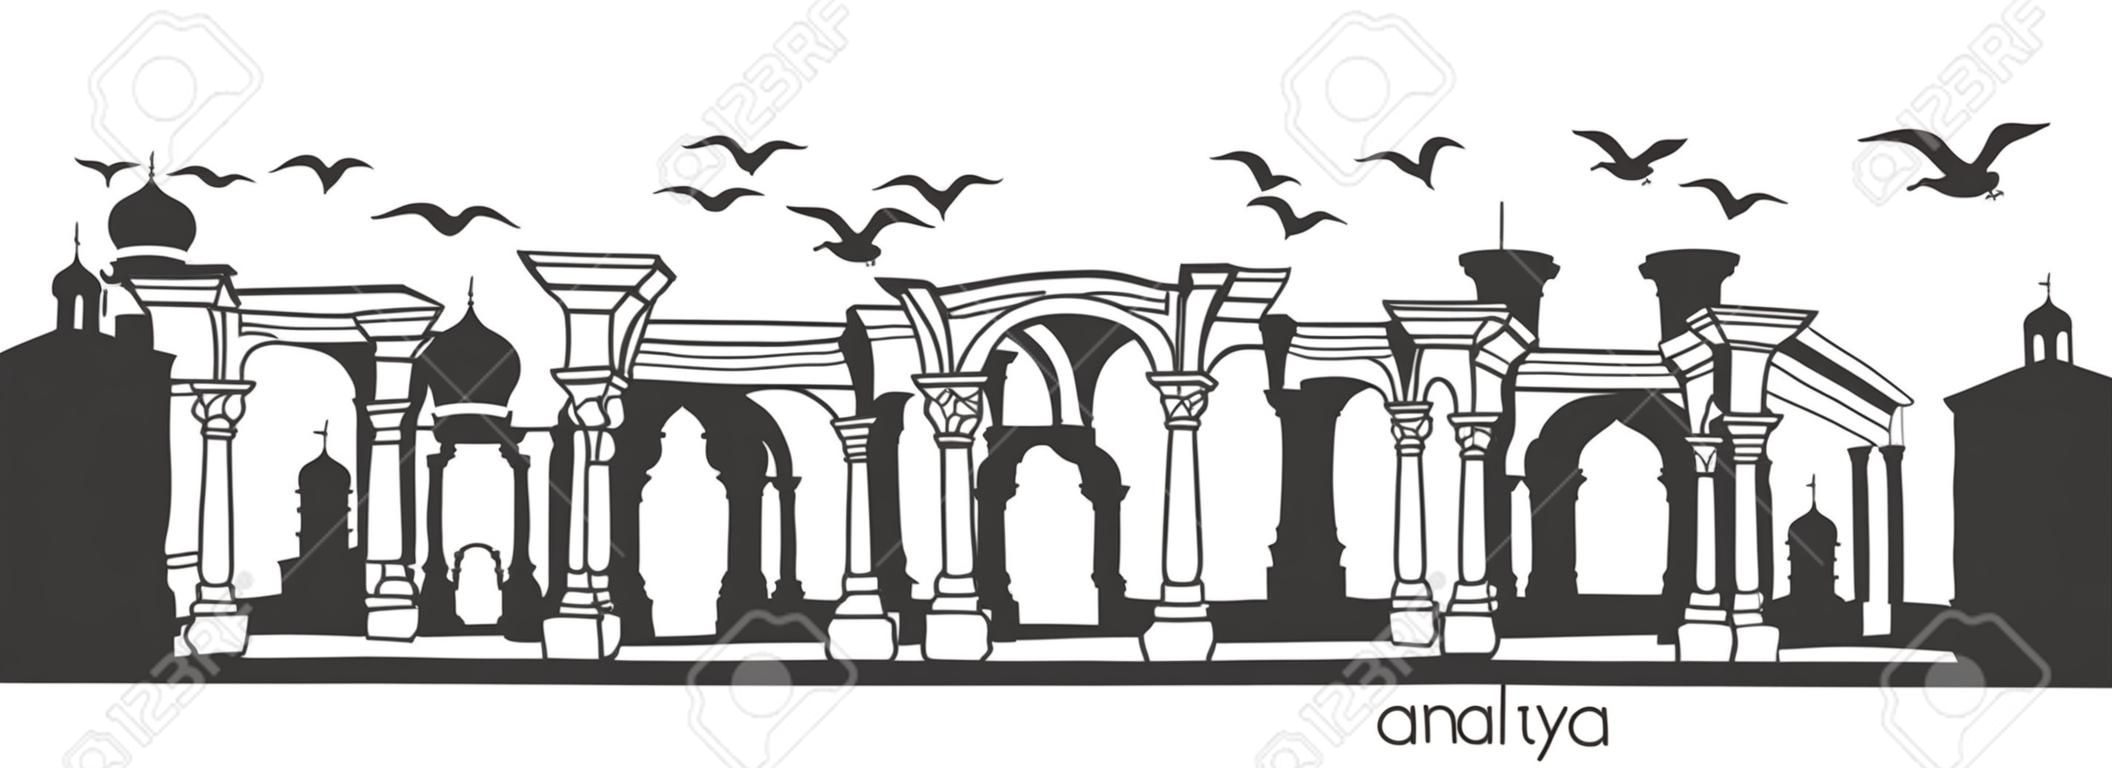 Antalya, Türkei mit handgezeichneten türkischen Doodle-Symbolen. Horizontale Panoramaszene für Banner- oder Druckdesign. Flacher minimalistischer Stil mit schwarzen Elementen.